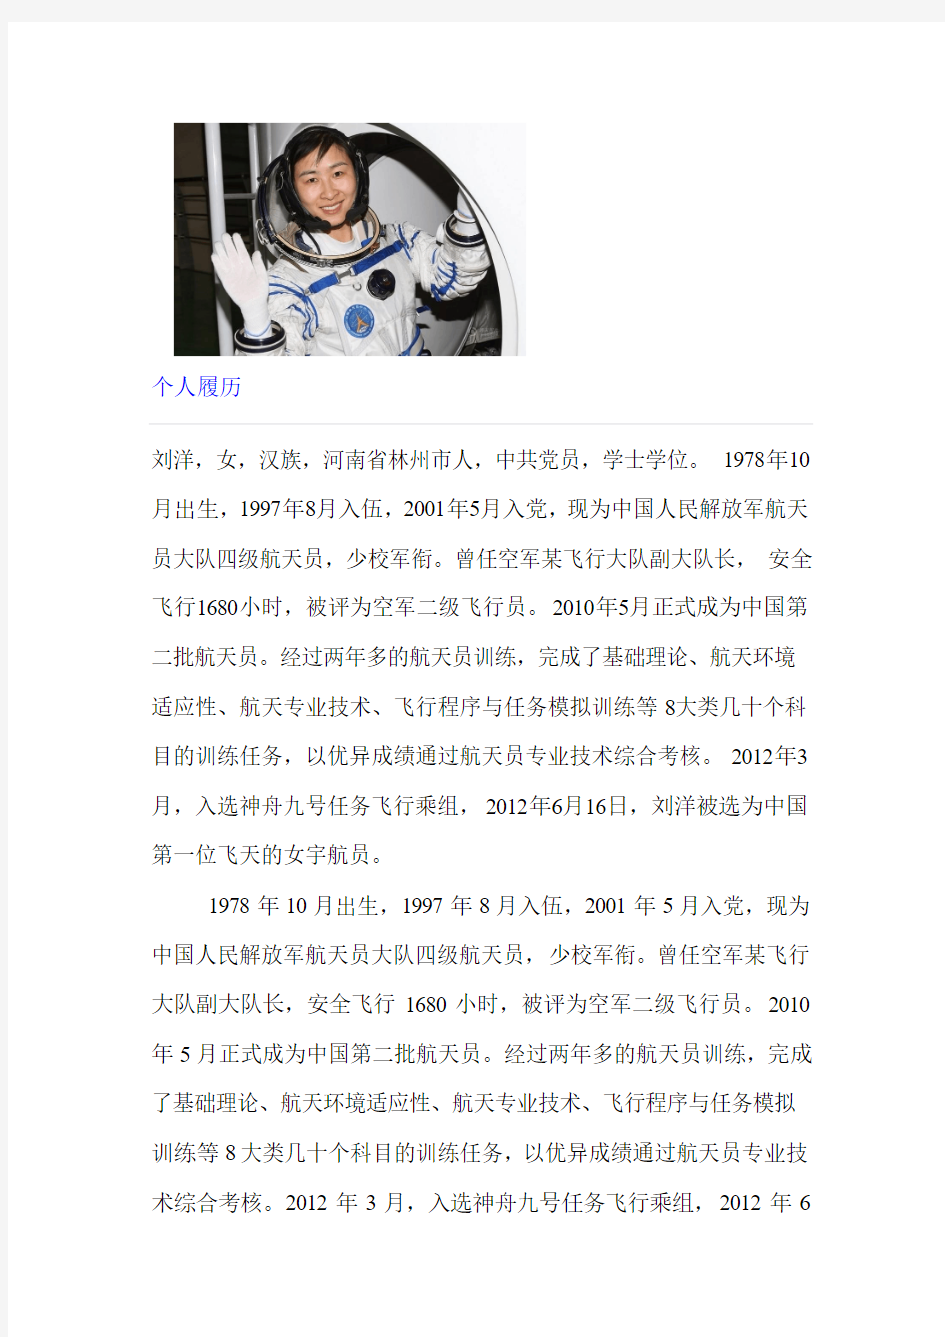 中国女宇航员刘洋的简介与个人故事